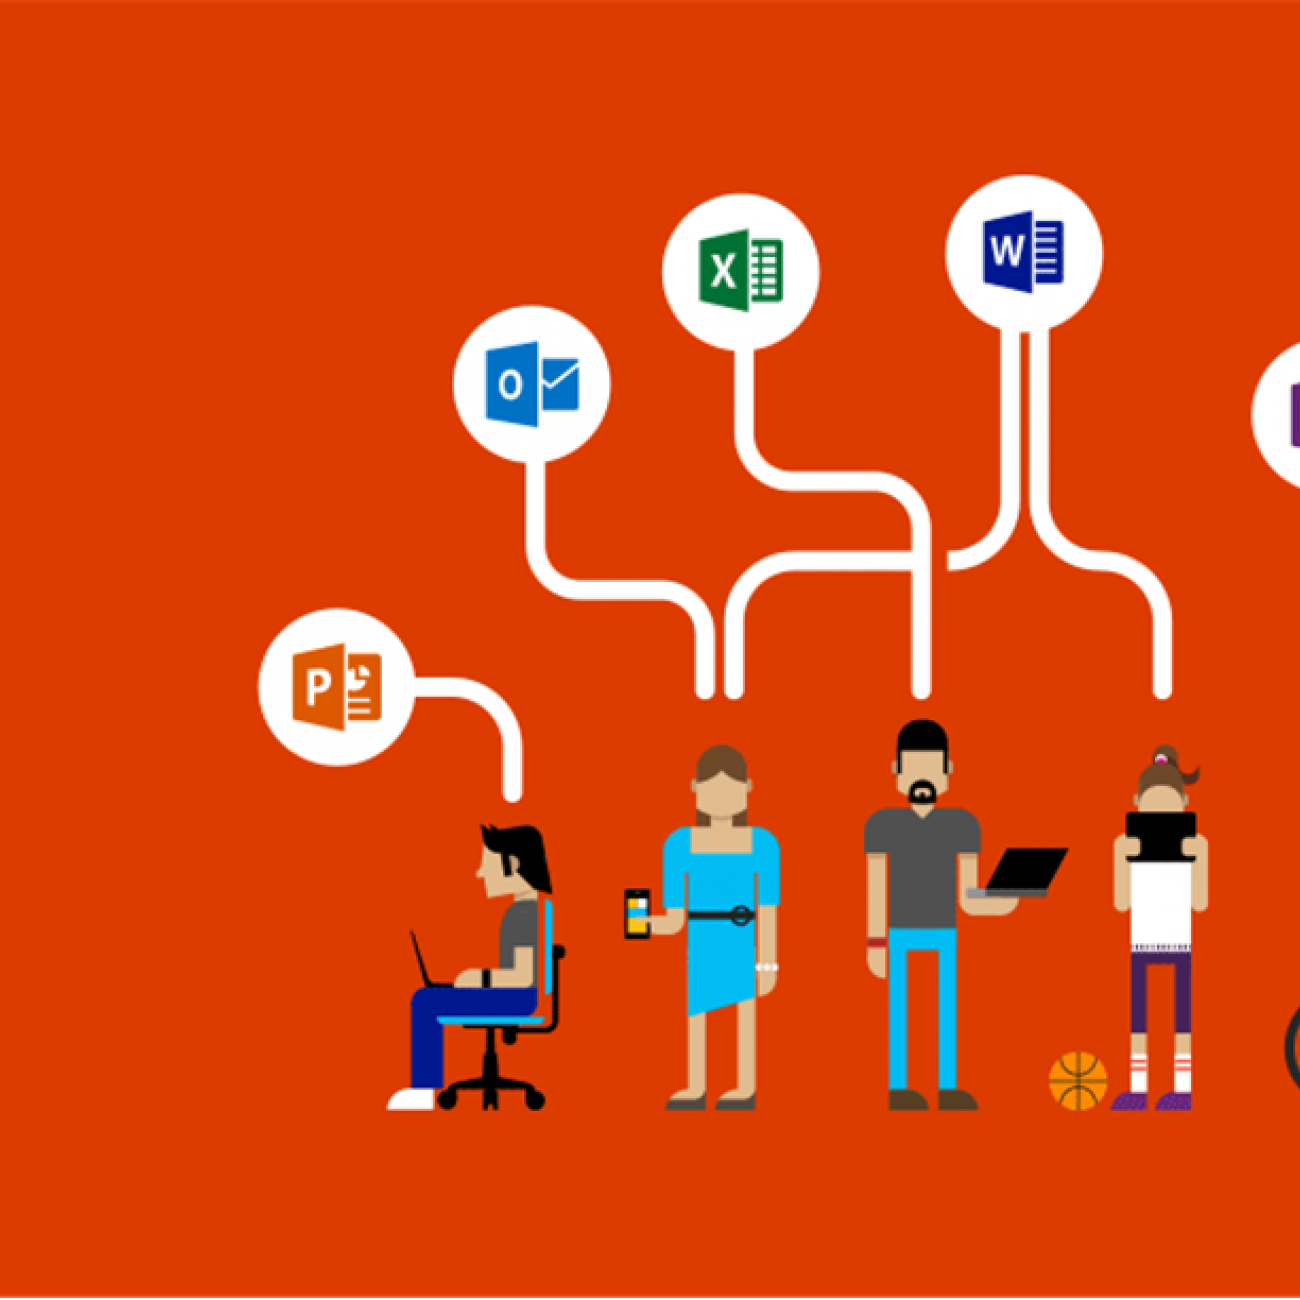 Microsoft Showcase College graphic